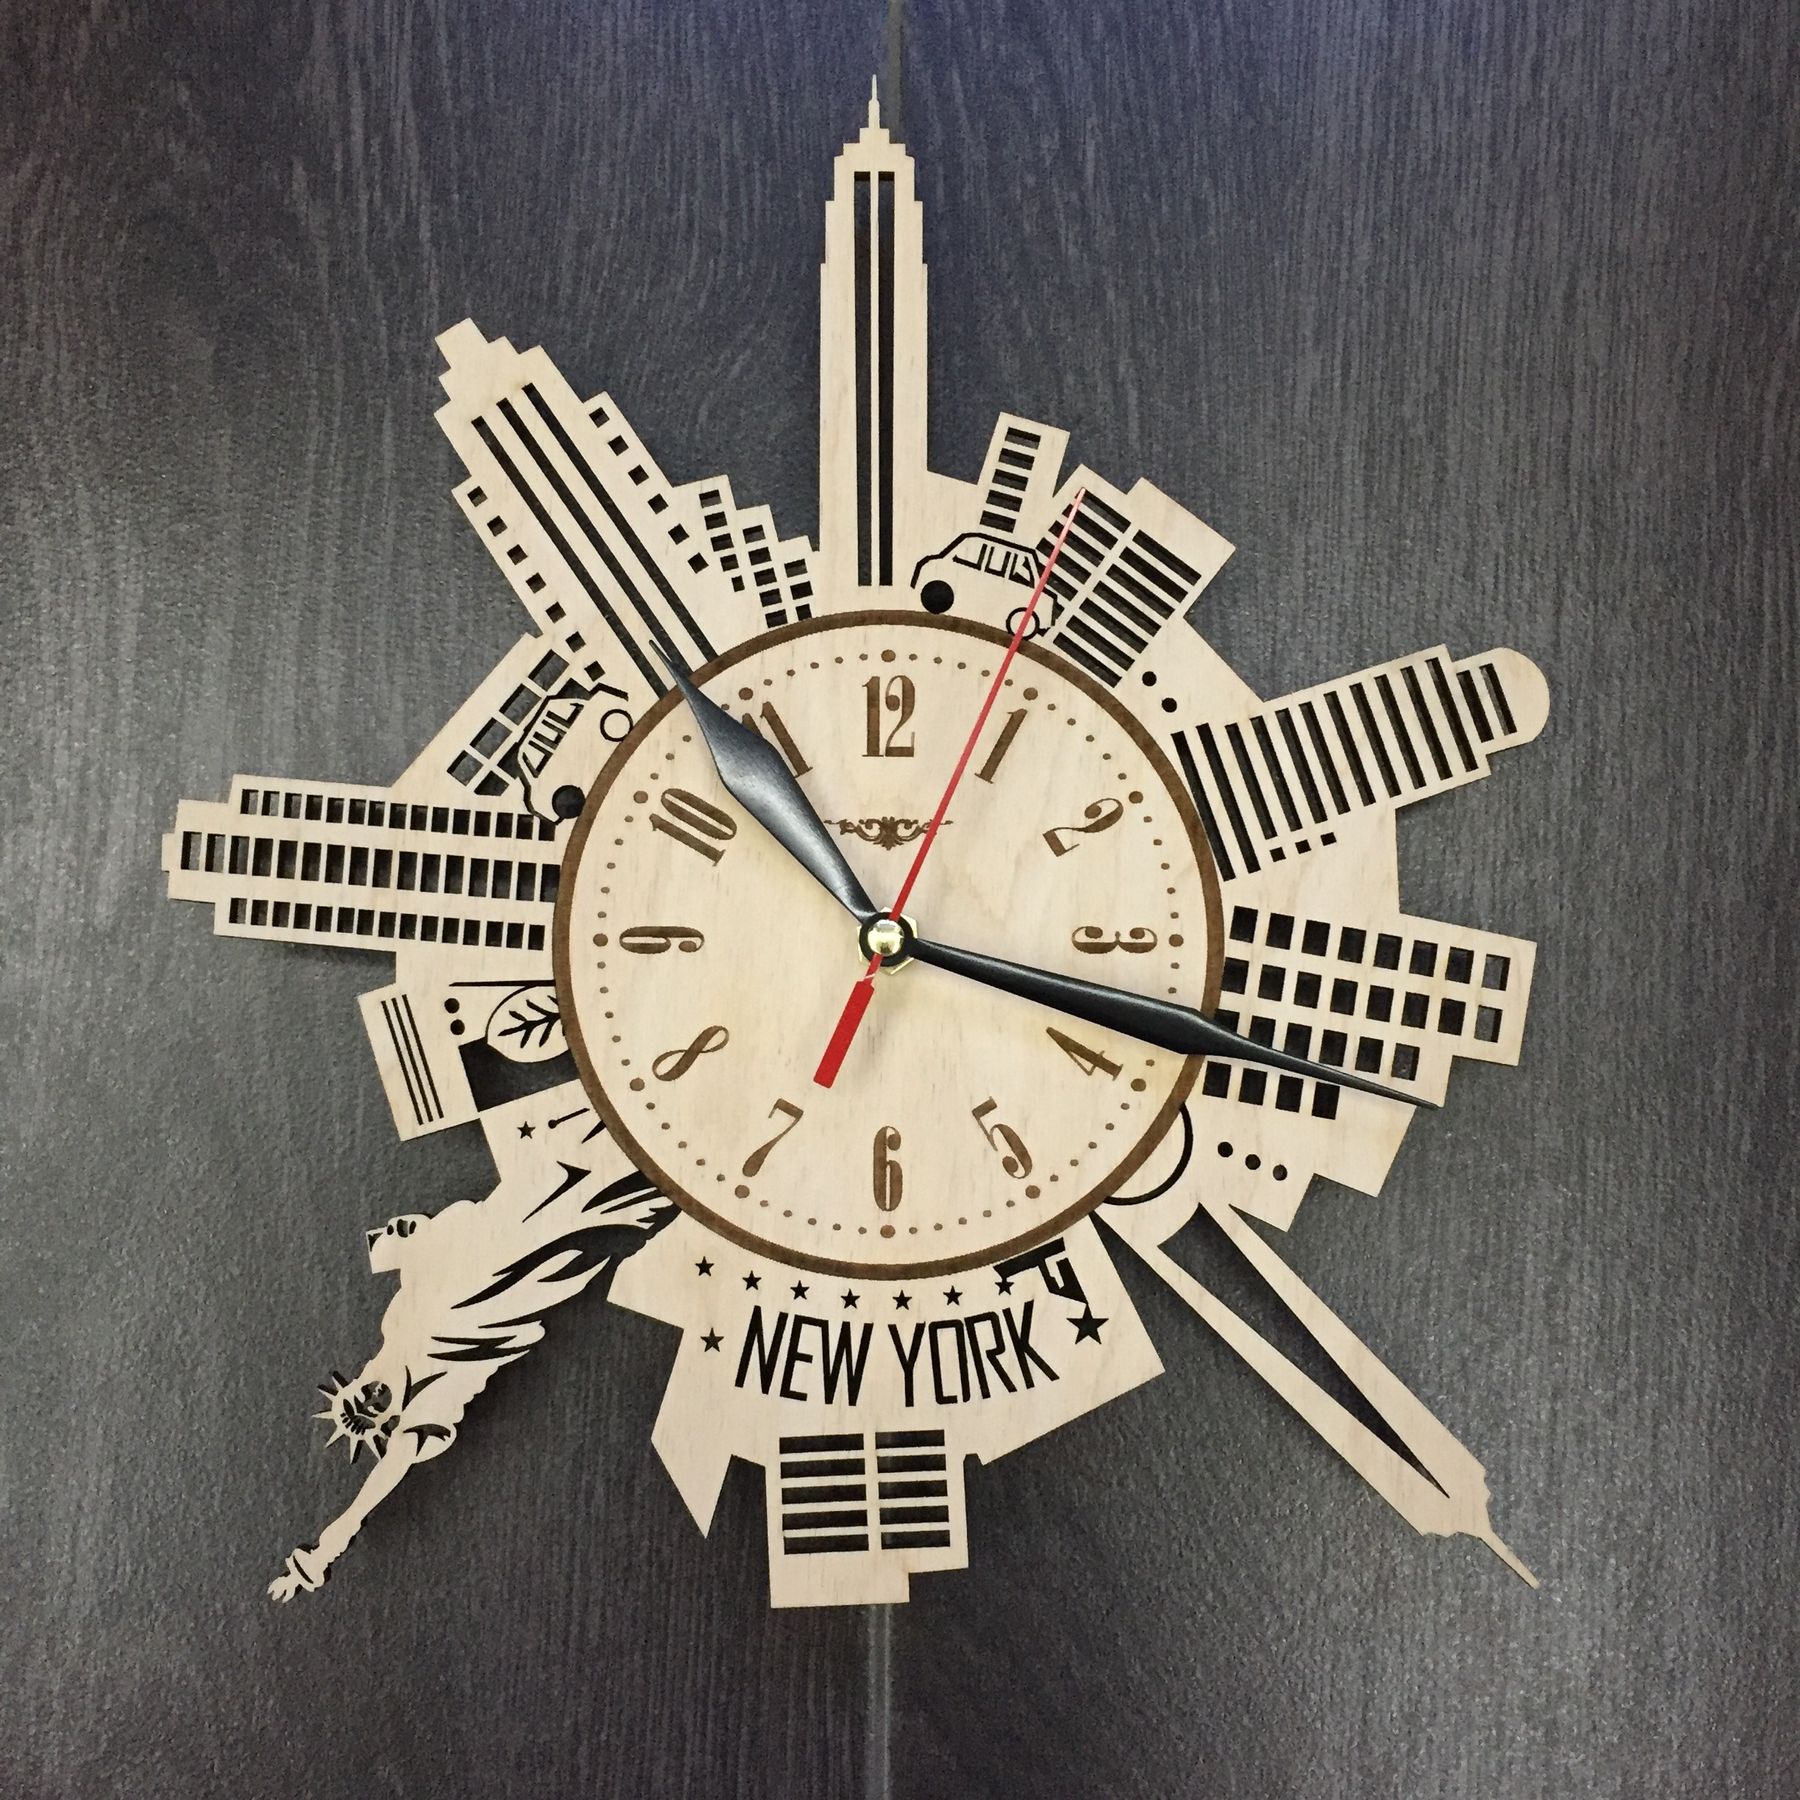 Часы 31 15. Часы из фанеры настенные. Часы настенные New York. Дизайнерские часы на стену из дерева. Часы настенные брендированные.